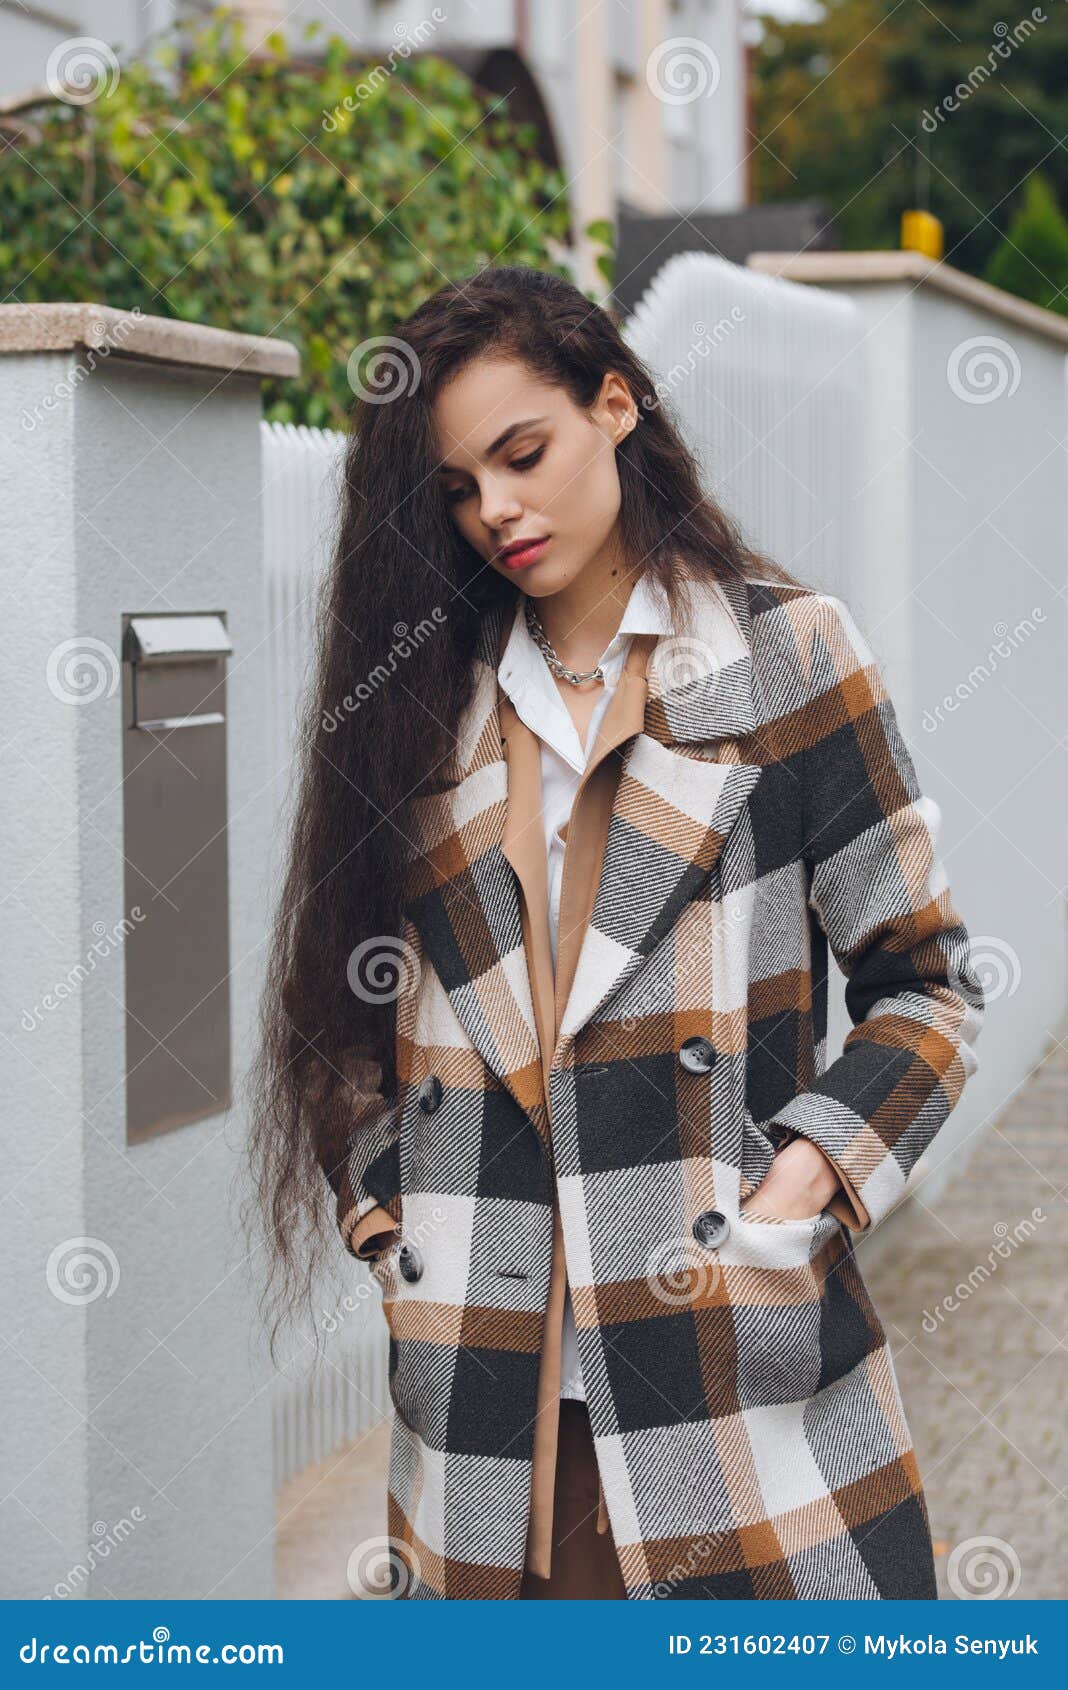 Retrato De La Joven Y Hermosa Mujer De Moda Vestida Con Un Abrigo Largo a Cuadros Pantalones Beige Y Blusa Blanca . Señora Imagen de archivo - Imagen elegancia, persona: 231602407